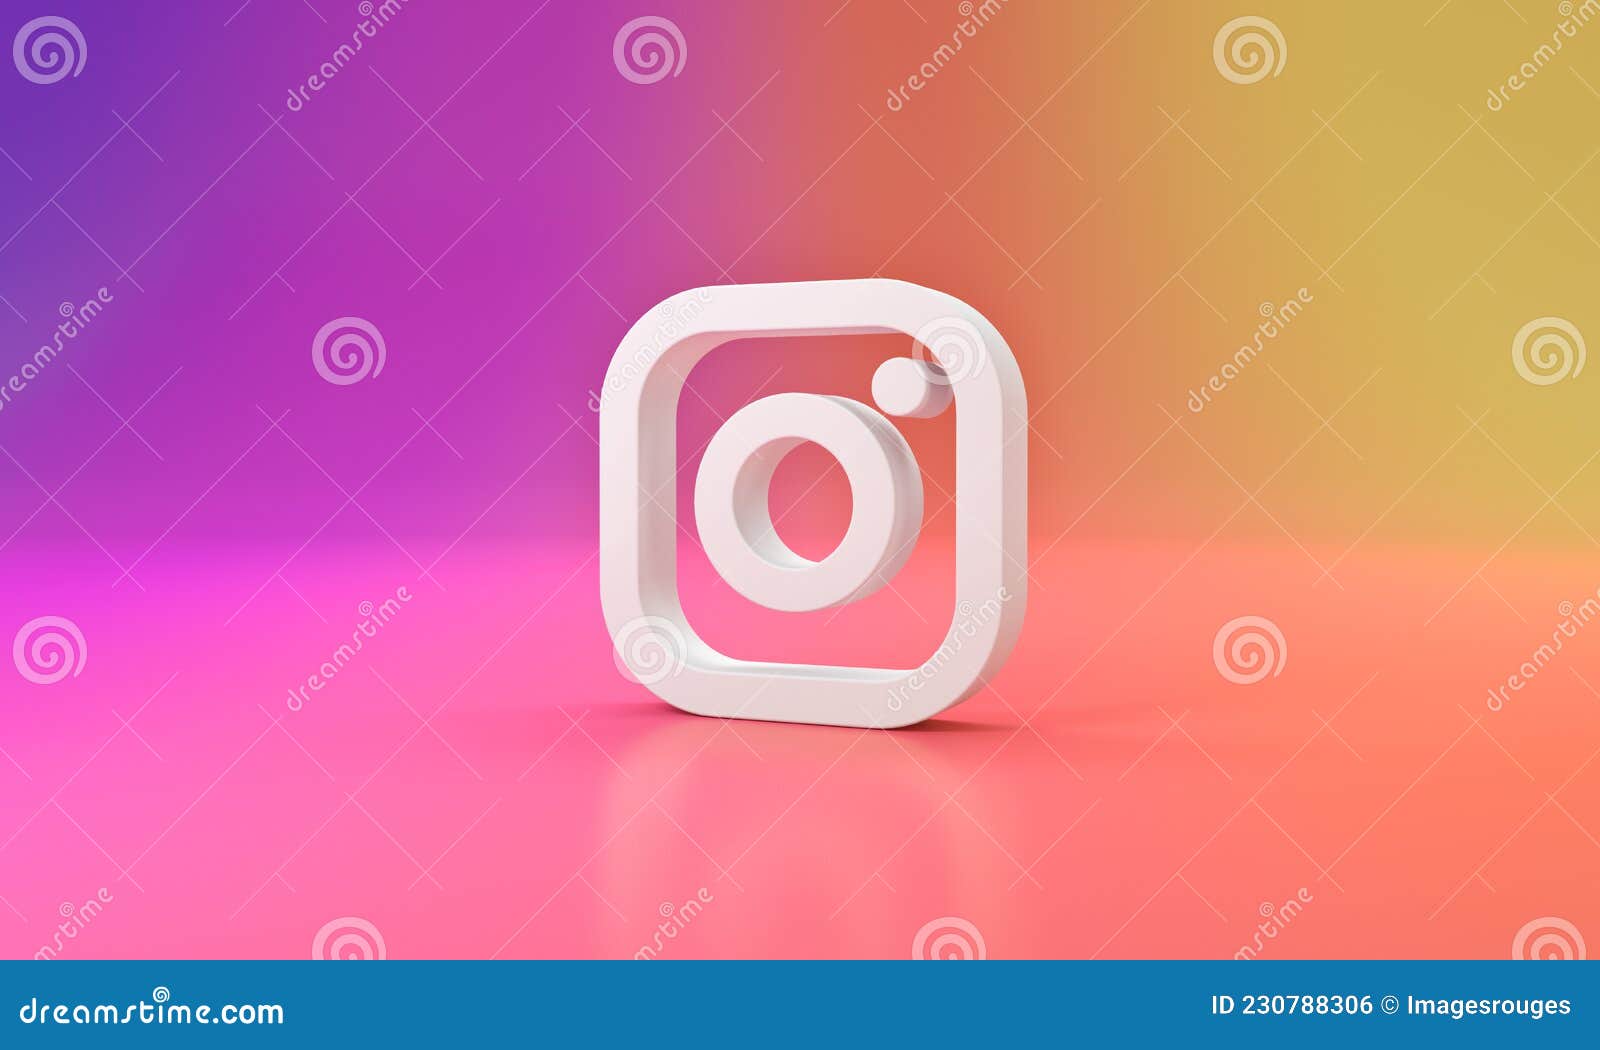 Story trên Instagram: Câu chuyện trên Instagram giờ đây là cách để chia sẻ những khoảnh khắc đáng nhớ và kết nối với cộng đồng. Với những tính năng mới như phòng thu âm, ảnh chụp thẳng đứng và thực đơn GIF, tạo câu chuyện trên Instagram của bạn trở nên dễ dàng và thú vị hơn bao giờ hết.